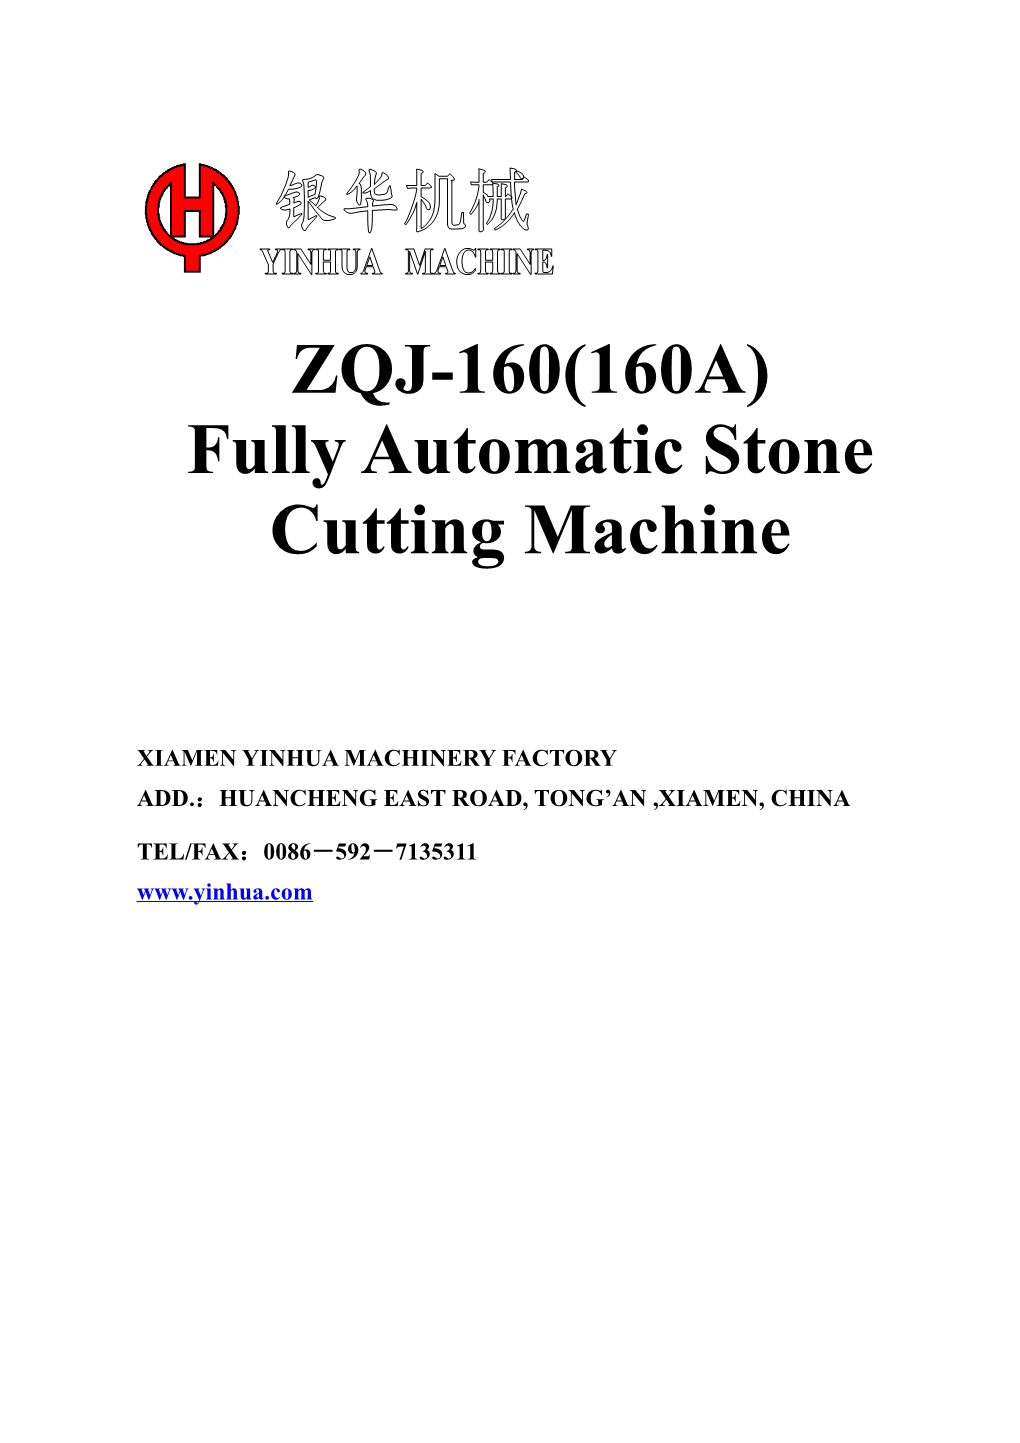 Fully Automatic Stone Cutting Machine